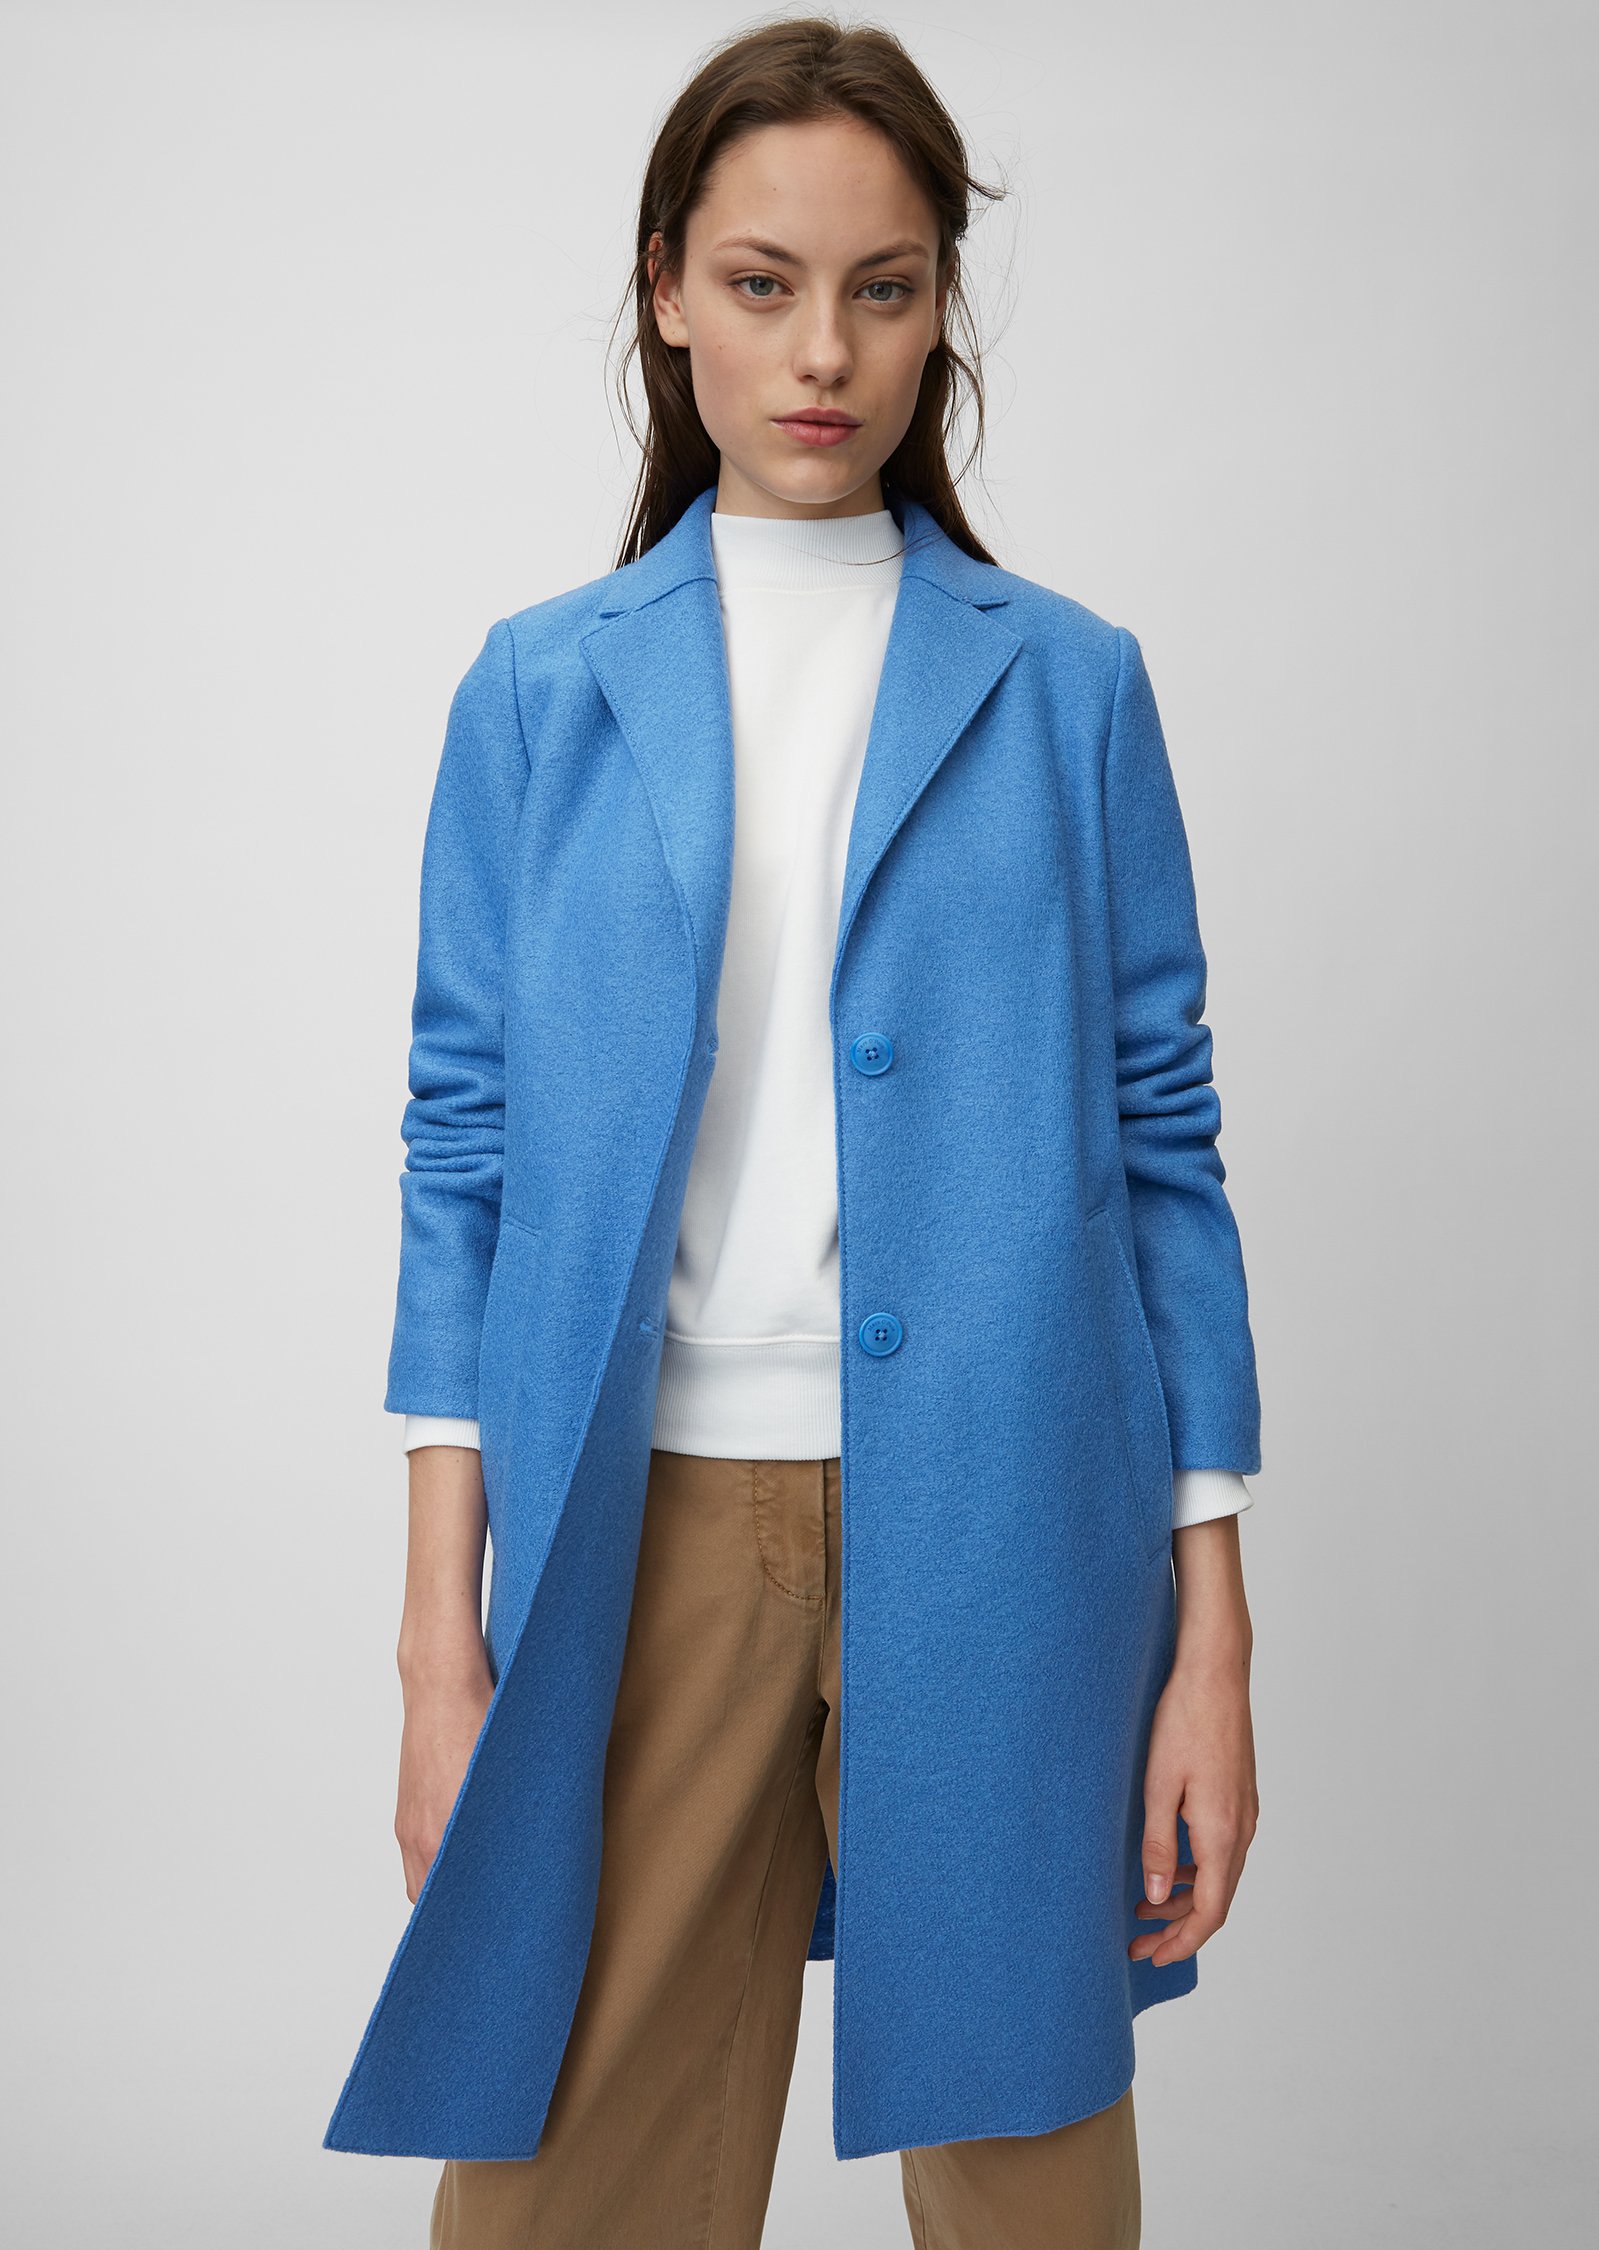 

Пальто женское Marc O’Polo модель 001601437001-865, Синий